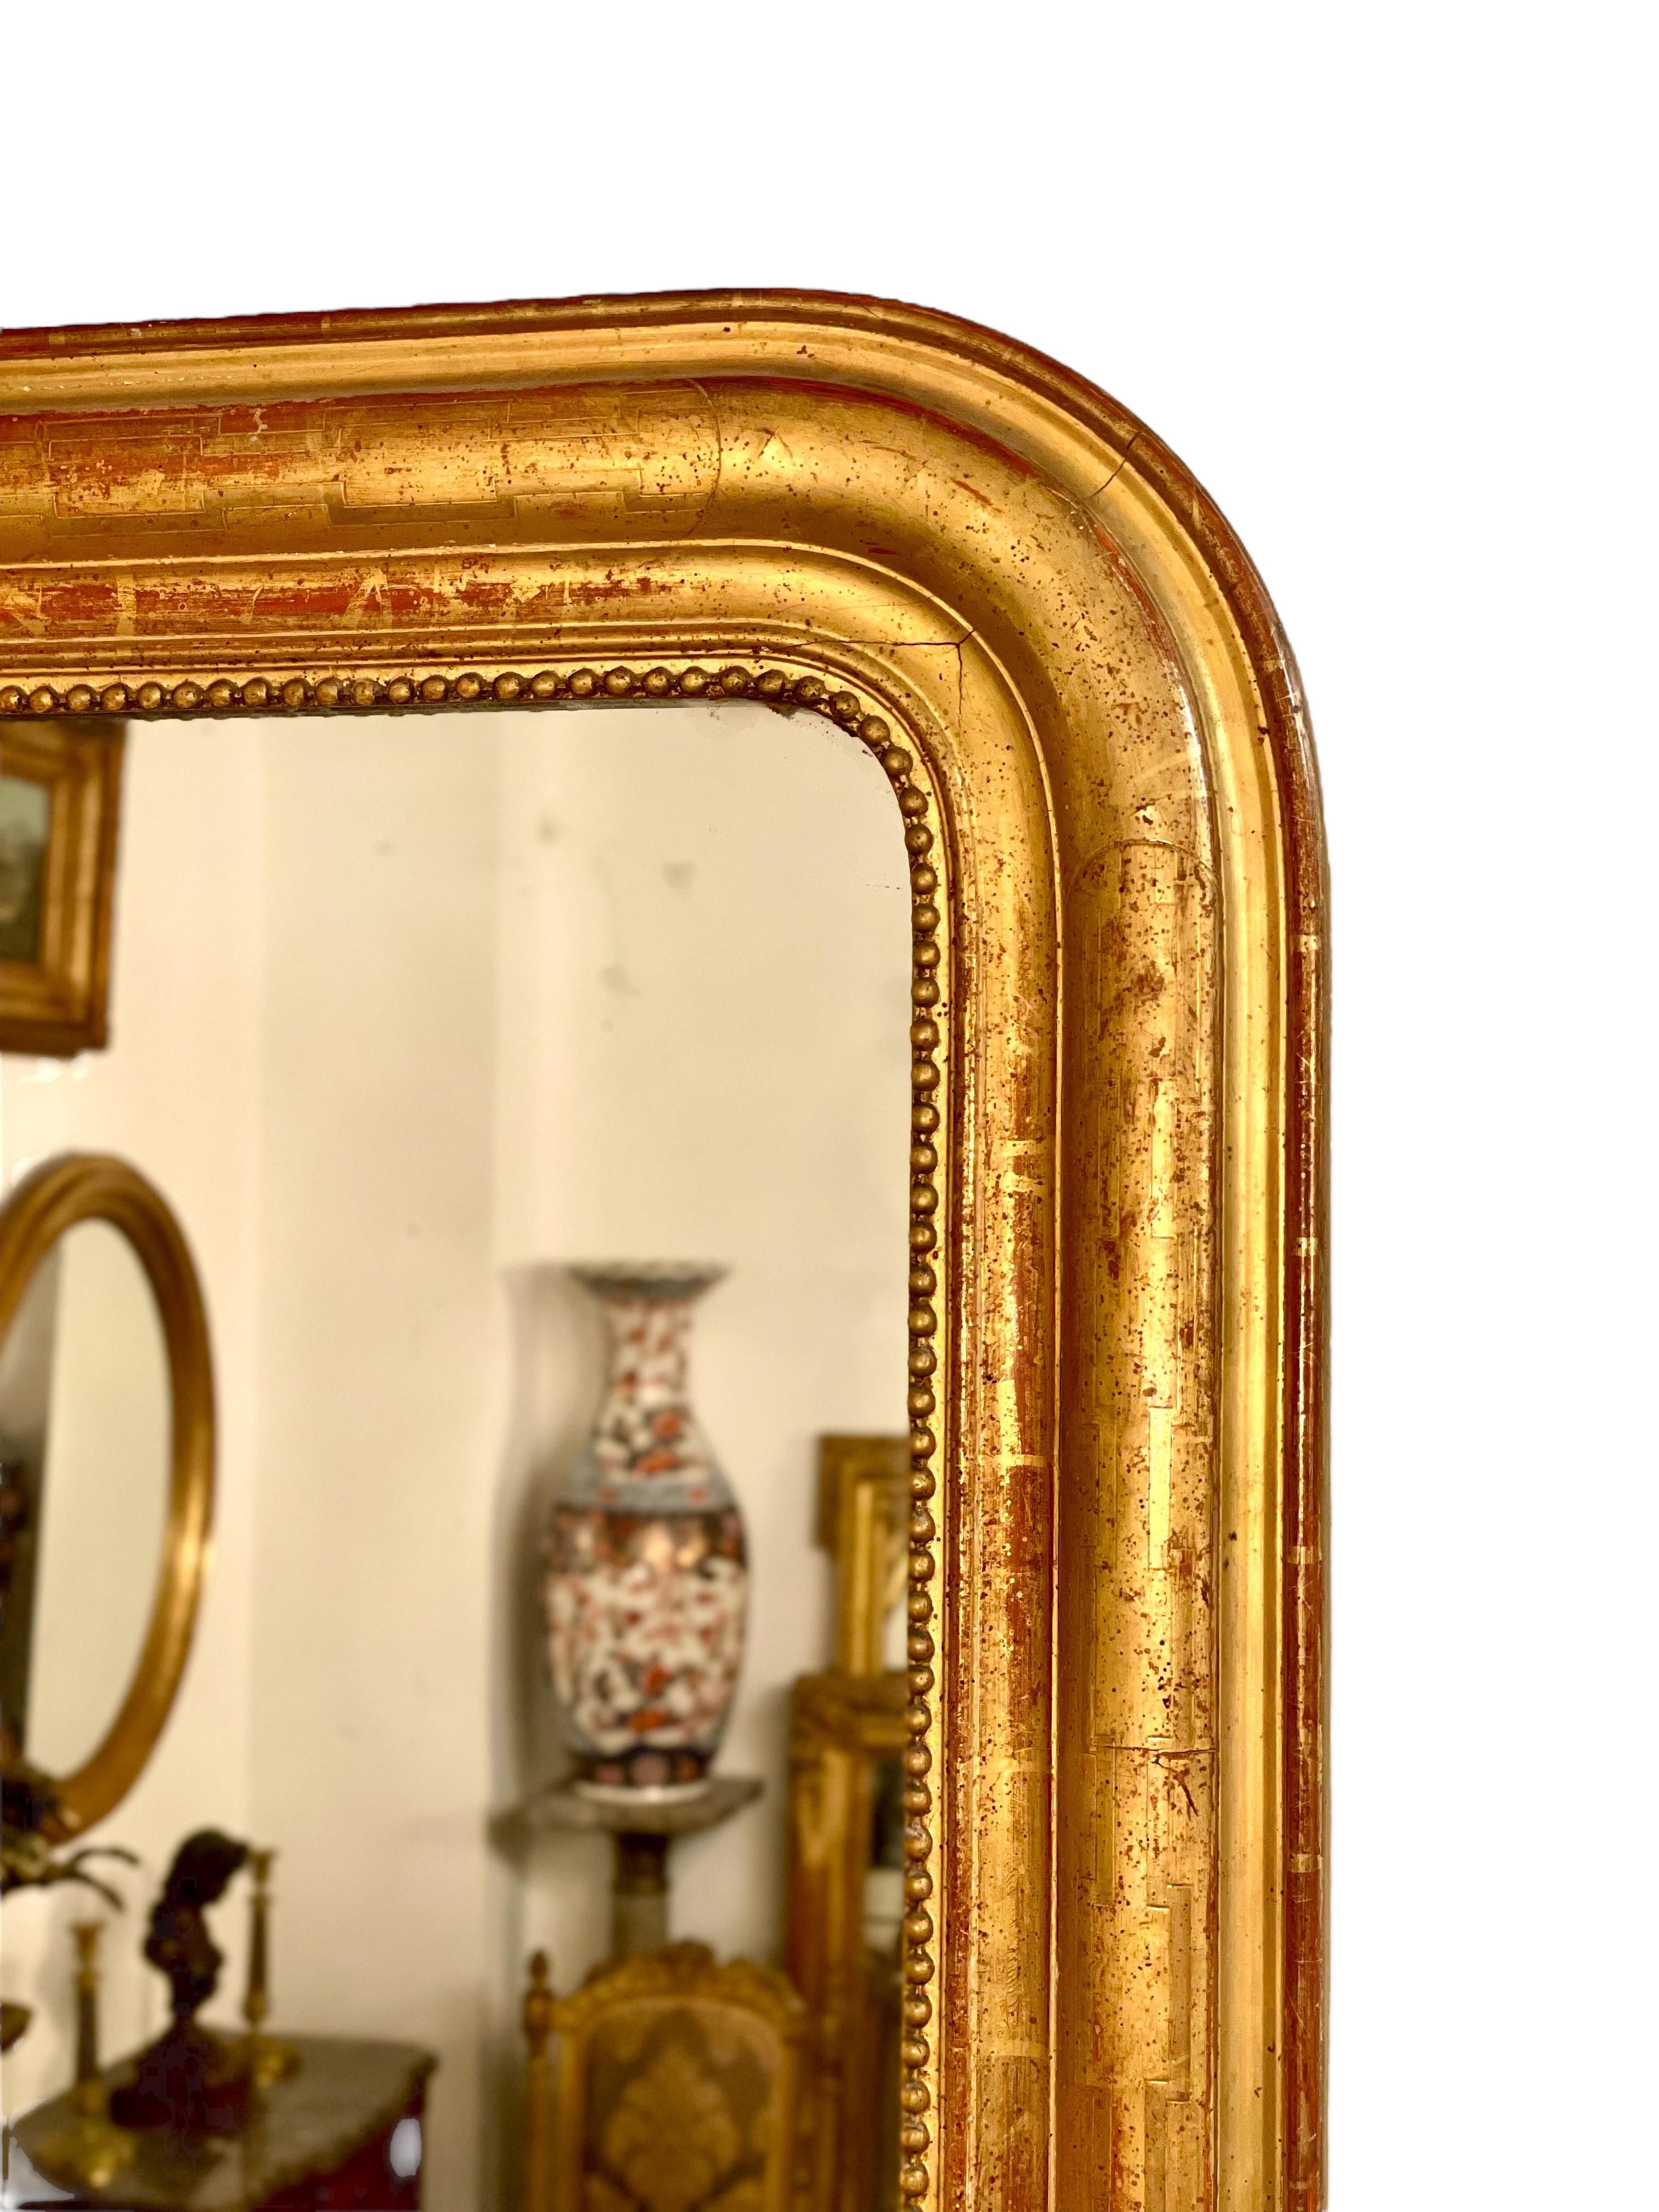 Ein schöner großer vergoldeter Louis-Philippe-Wandspiegel mit den für die Epoche typischen gebogenen oberen Ecken und einer schönen geformten Einfassung mit einem geätzten geometrischen Muster, das durch brüniertes Blattgold sichtbar ist. Eine zarte